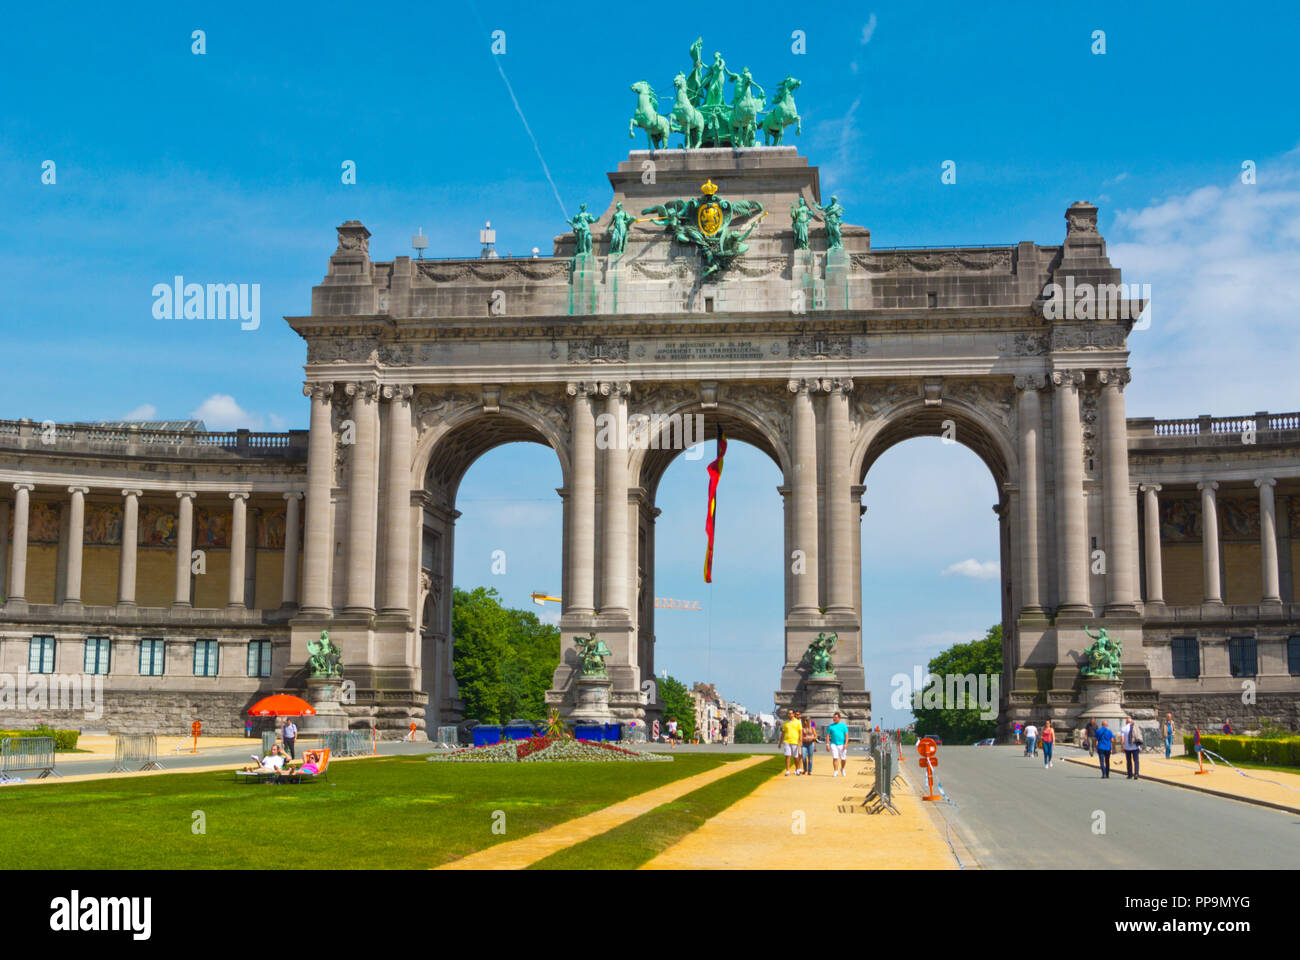 Arcades du cinquantenaire, Triumphal Arch, Parc du Cinquantenaire, Brussels, Belgium Stock Photo